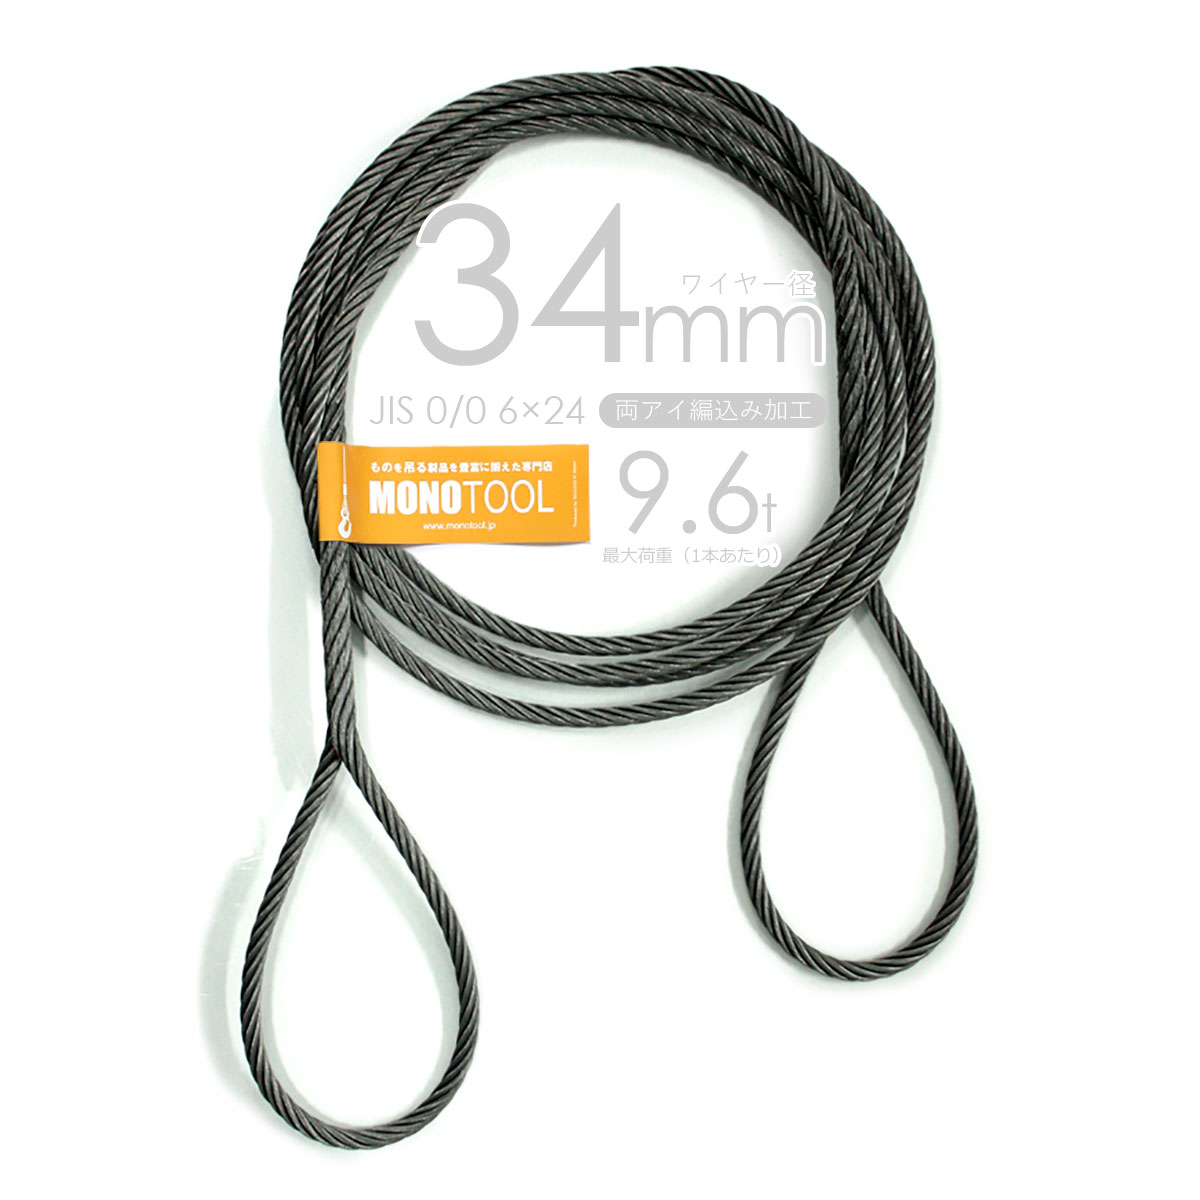 編み込み・フレミッシュ加工 JIS黒(O/O) 34mm(11分) 玉掛ワイヤロープ 